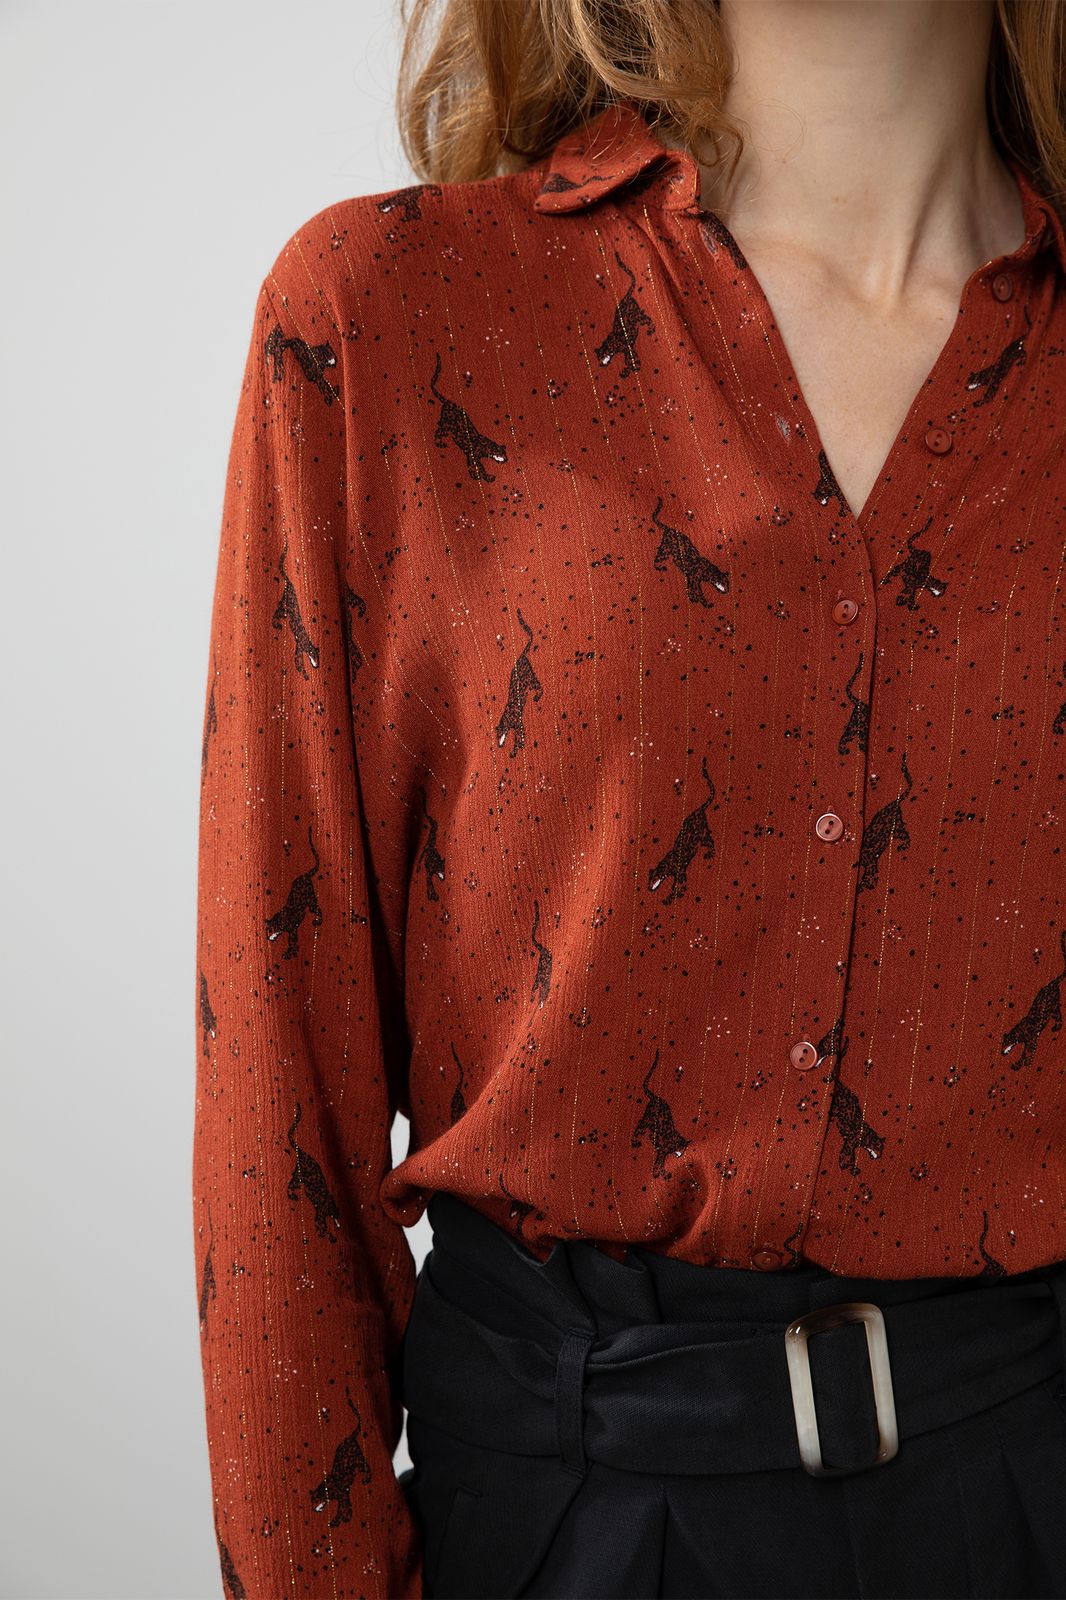 Bijdrage adopteren geleidelijk Rode viscose blouse met all over print